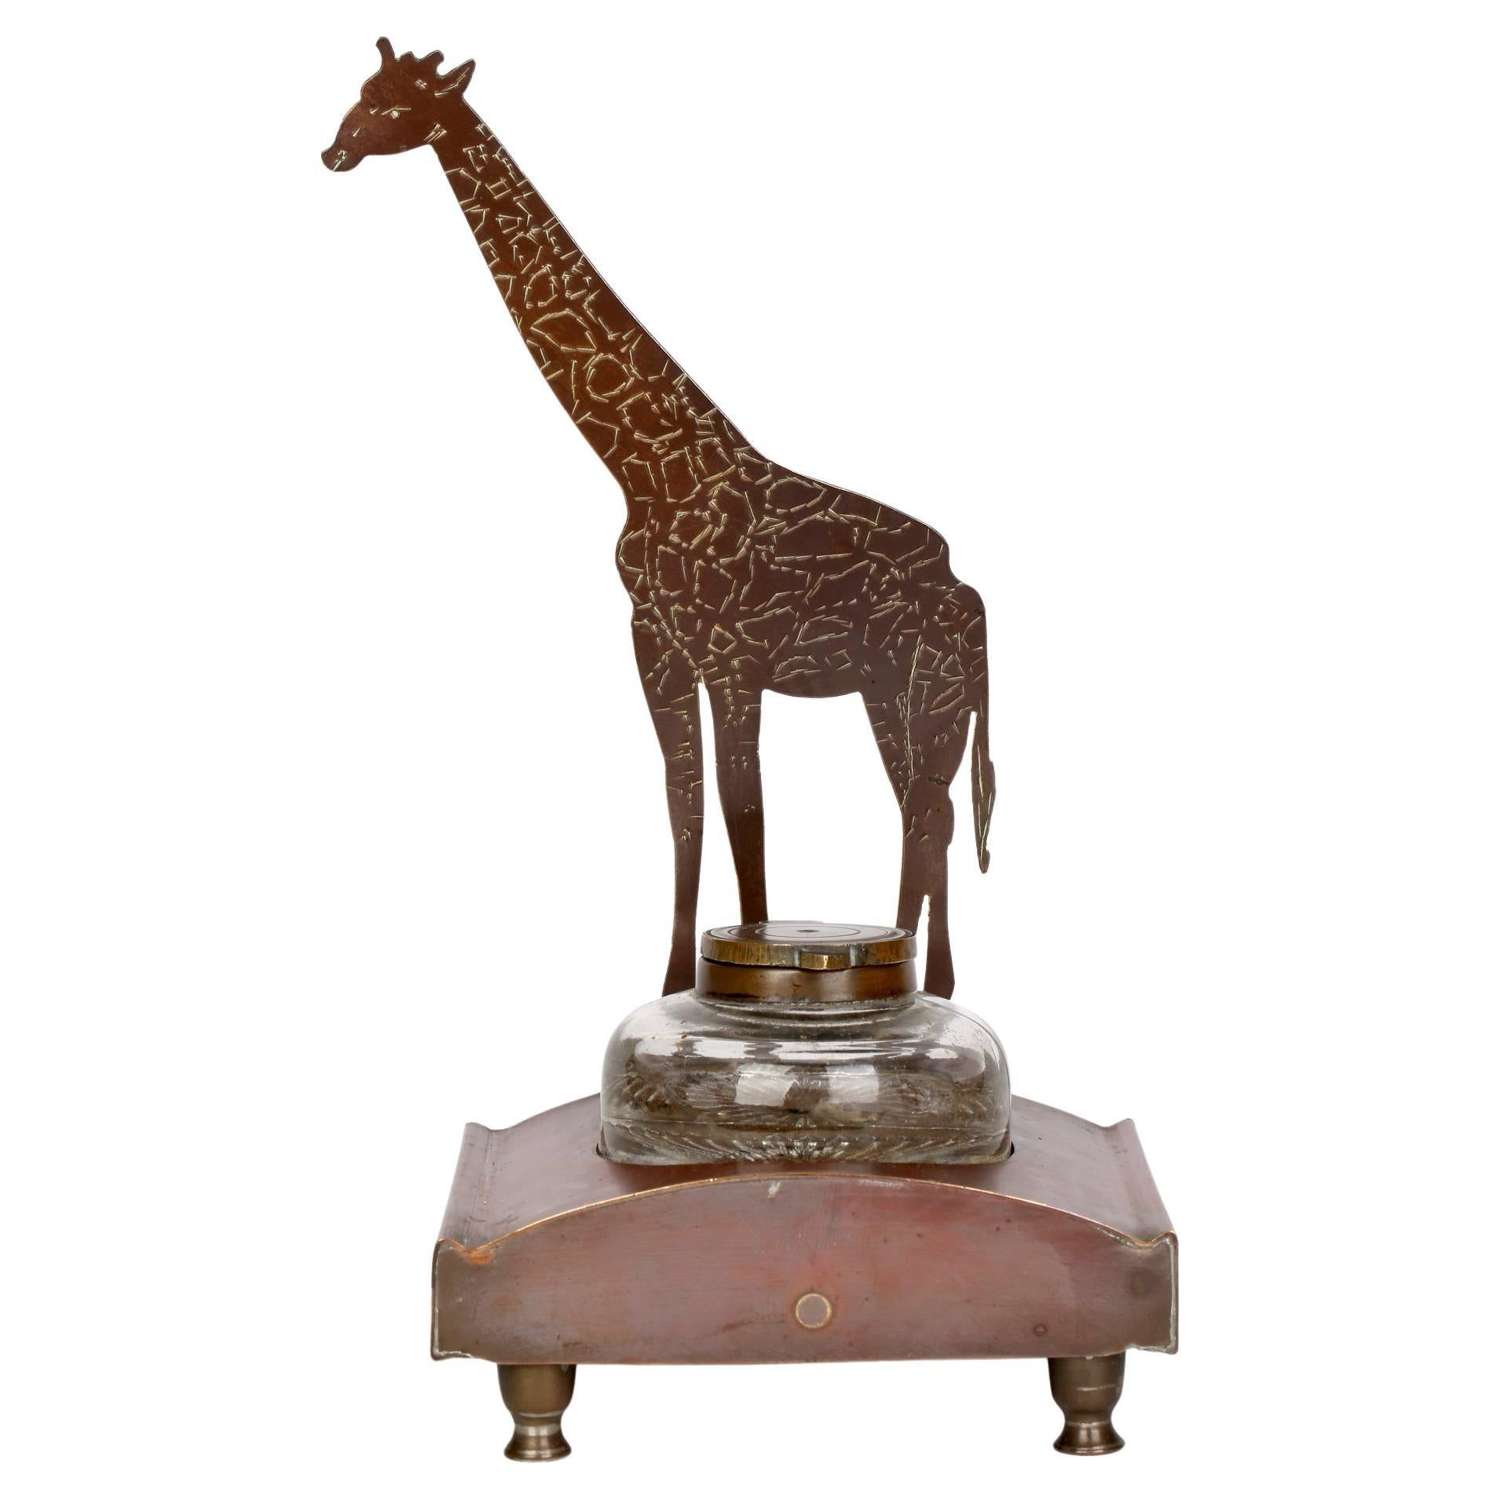 Ignatius Taschner Jugendstil Giraffe Mounted Ink Stand